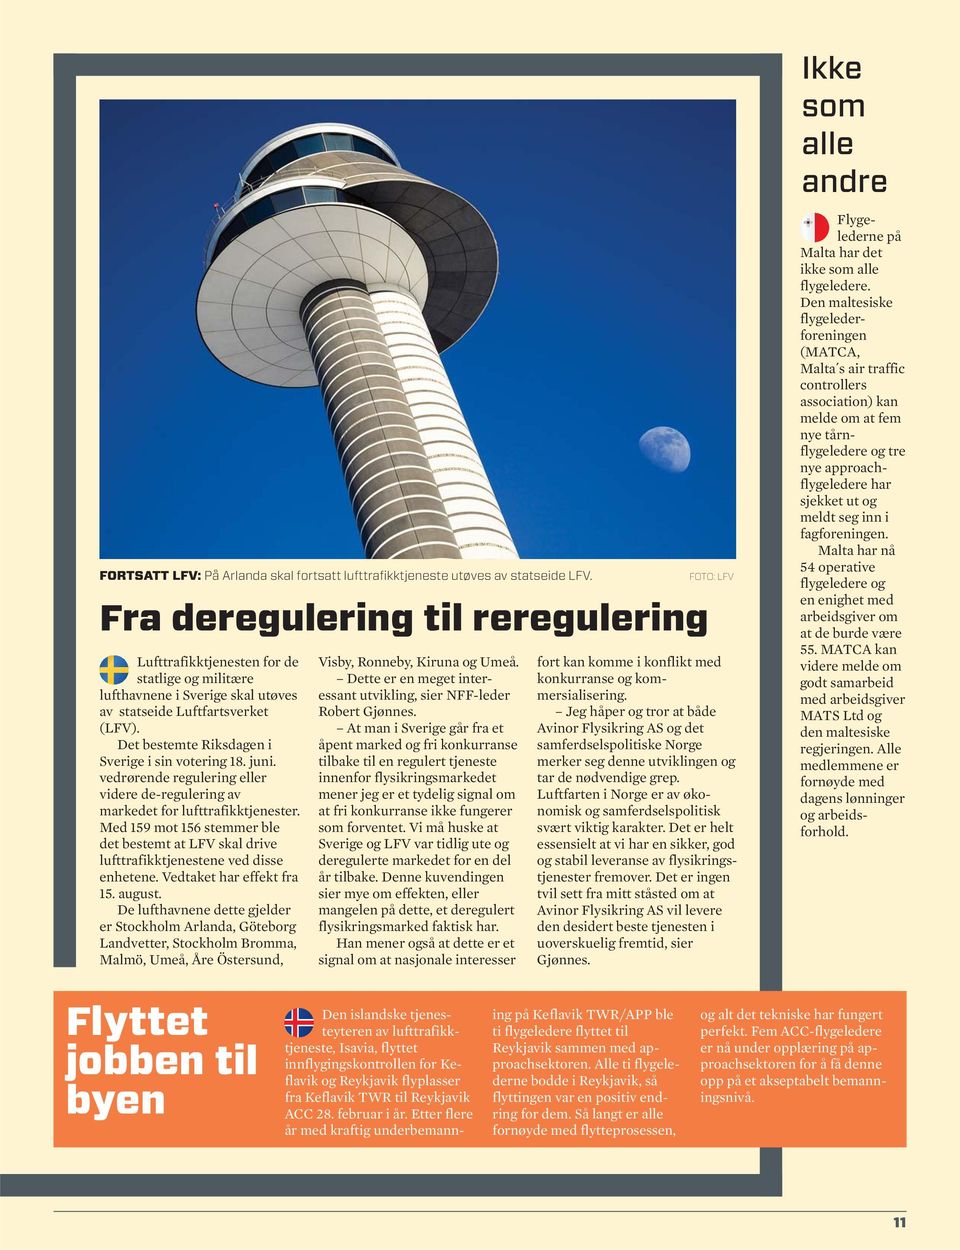 Det bestemte Riksdagen i Sverige i sin votering 18. juni. vedrørende regulering eller videre de-regulering av markedet for lufttrafikktjenester.